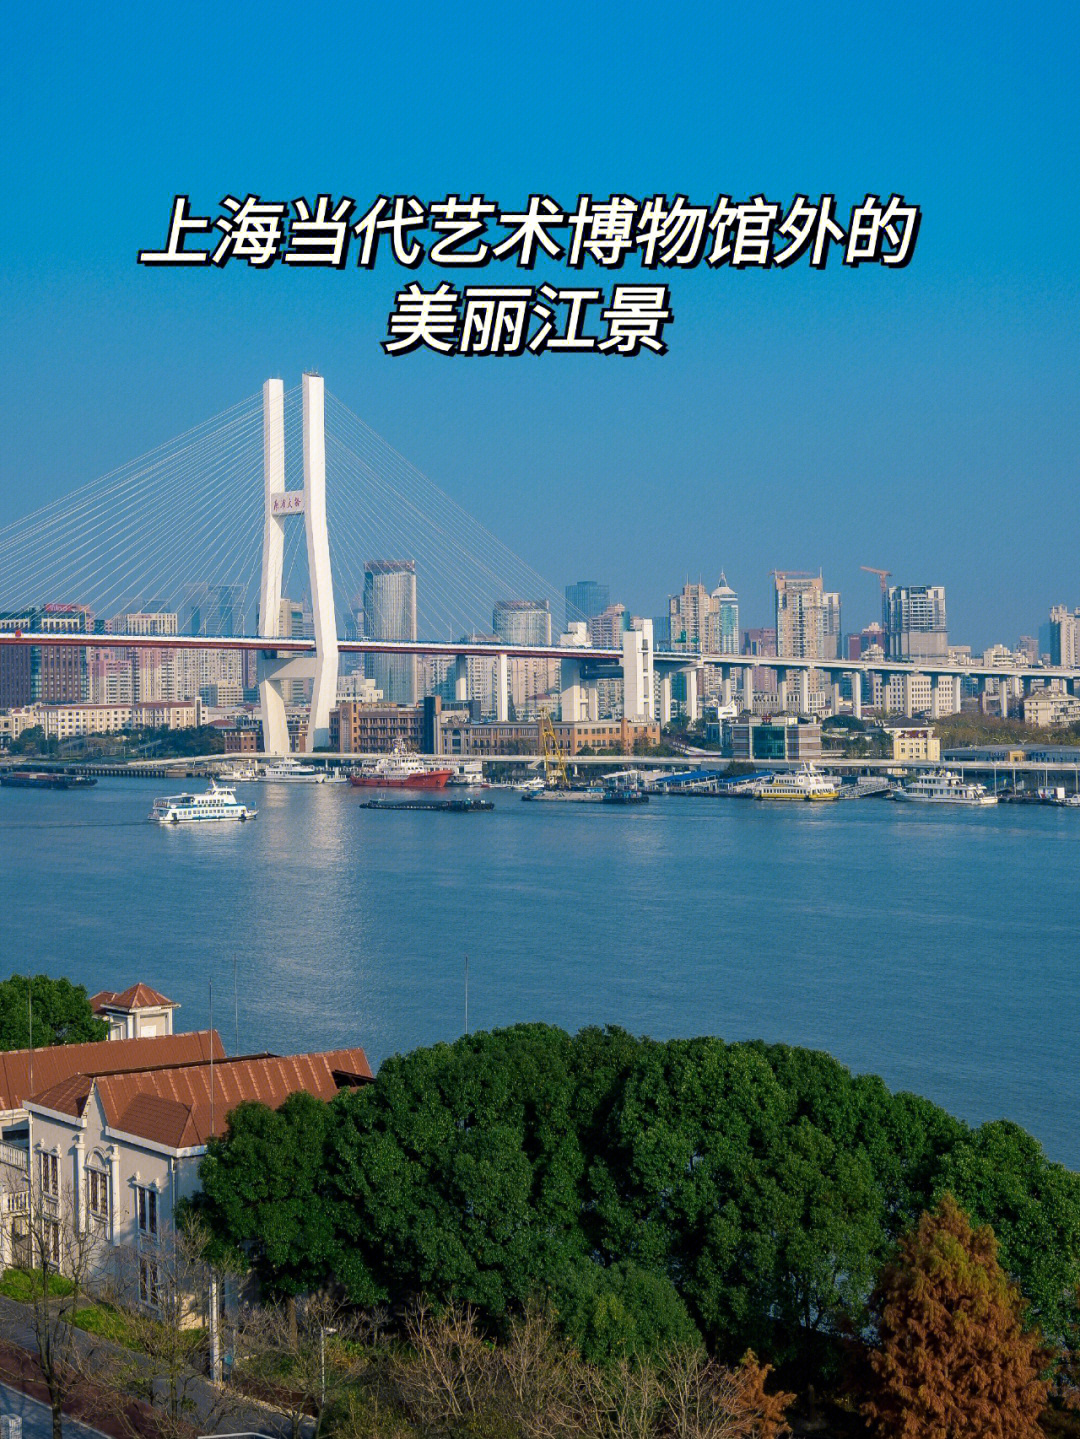 上海当代艺术博物馆天台看南浦大桥黄浦江